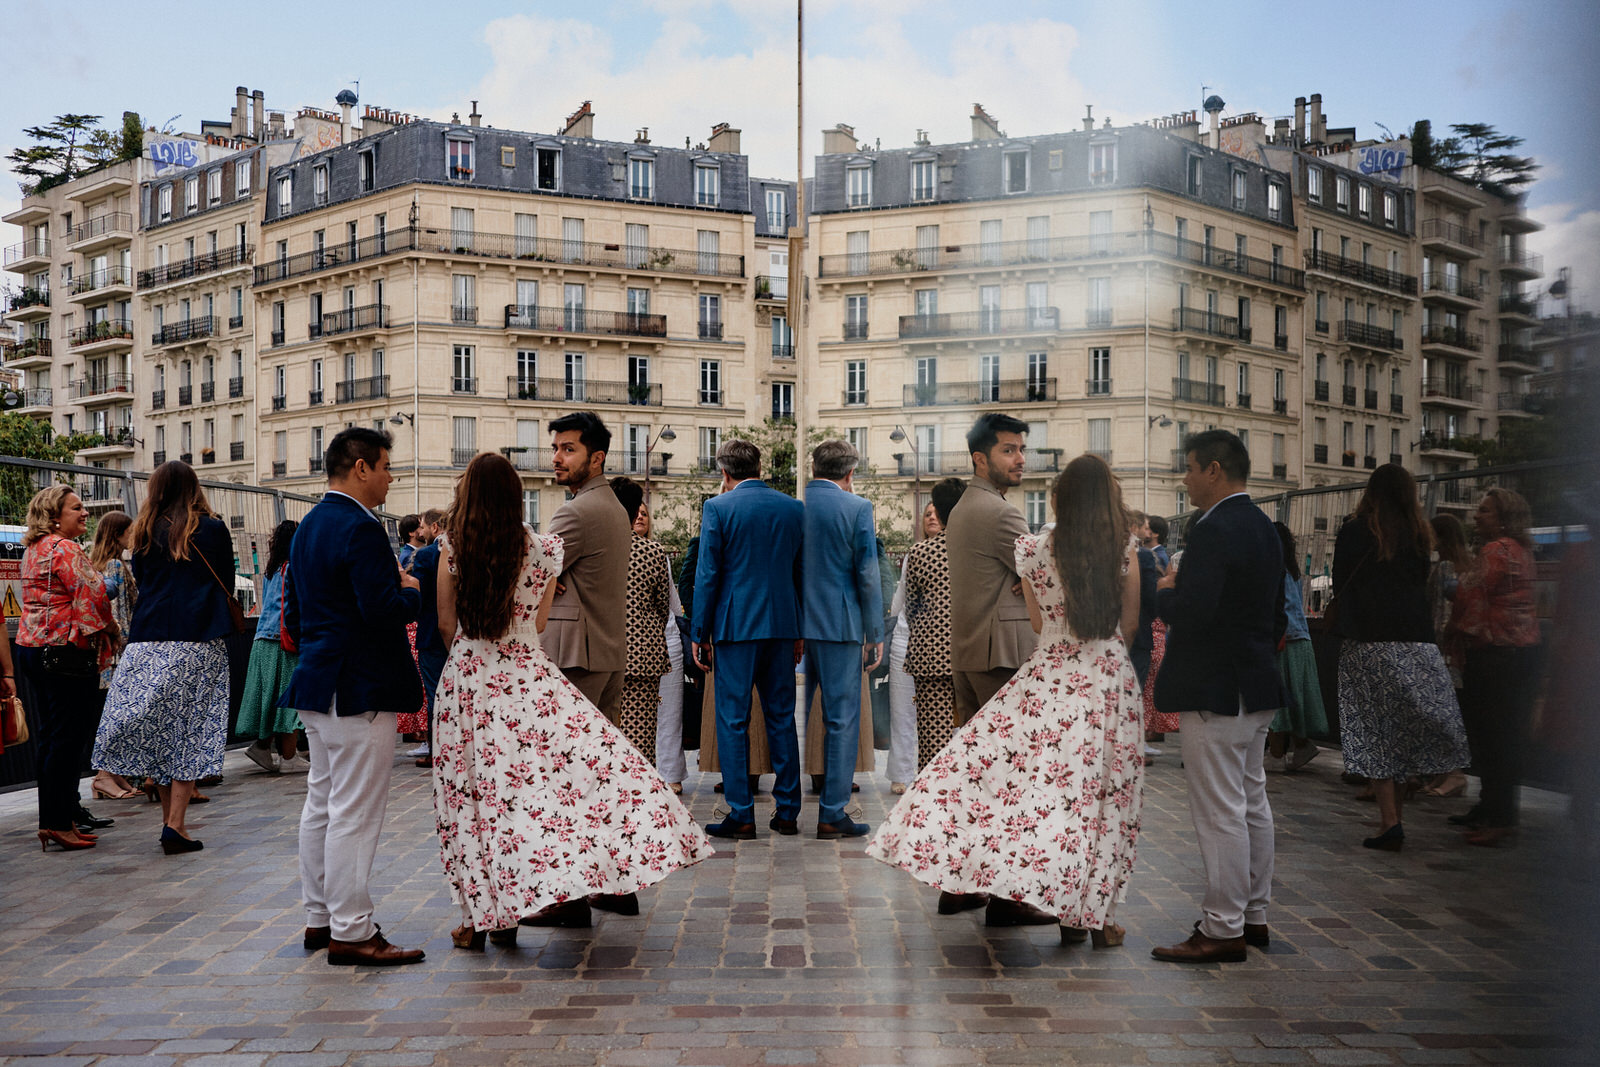 Invités du mariage attendant l'arrivée des mariés devant la mairie du 13ème arrondissement de Paris pendant les travaux. La scène se reflète dans une vitre